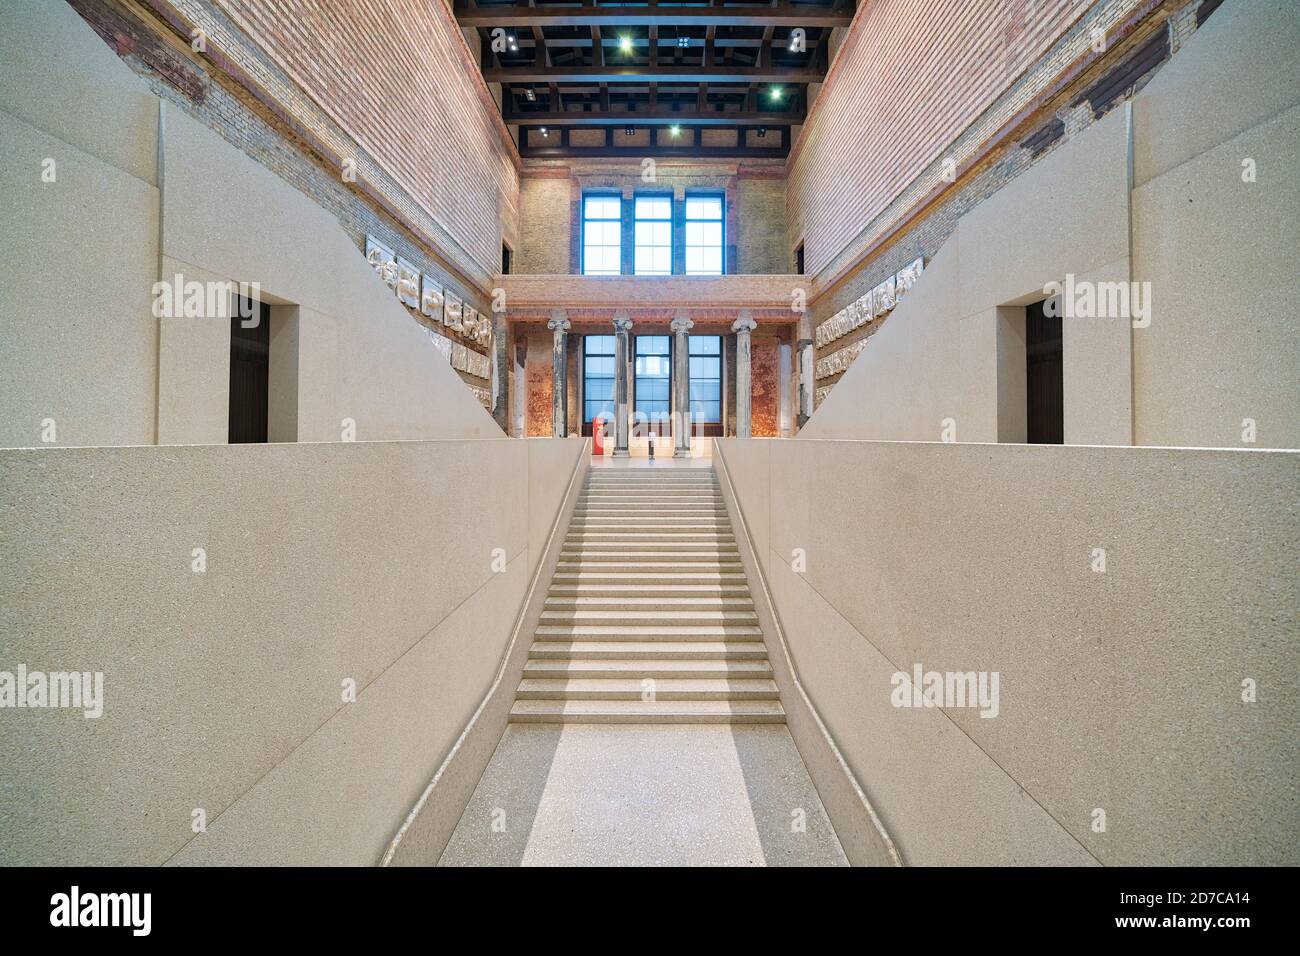 Museo de Neues de Berlín, Nuevo Museo, en la Isla de los Museos o Museumsinsel. Interior. Reconstrucción por el arquitecto David Chipperfield. Foto de stock